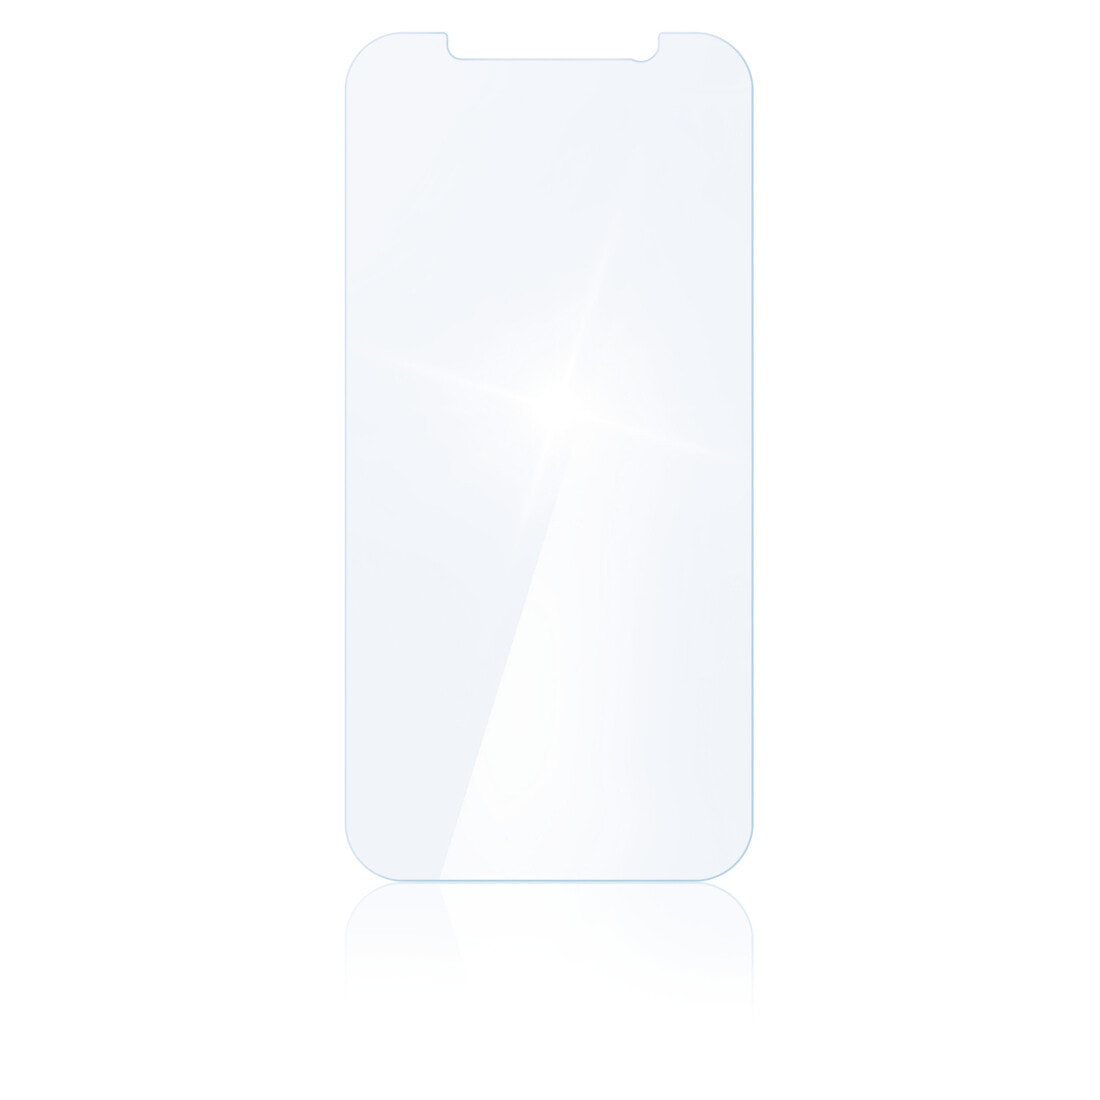 Hama 00186262 защитная пленка / стекло Прозрачная защитная пленка Мобильный телефон / смартфон Apple 1 шт